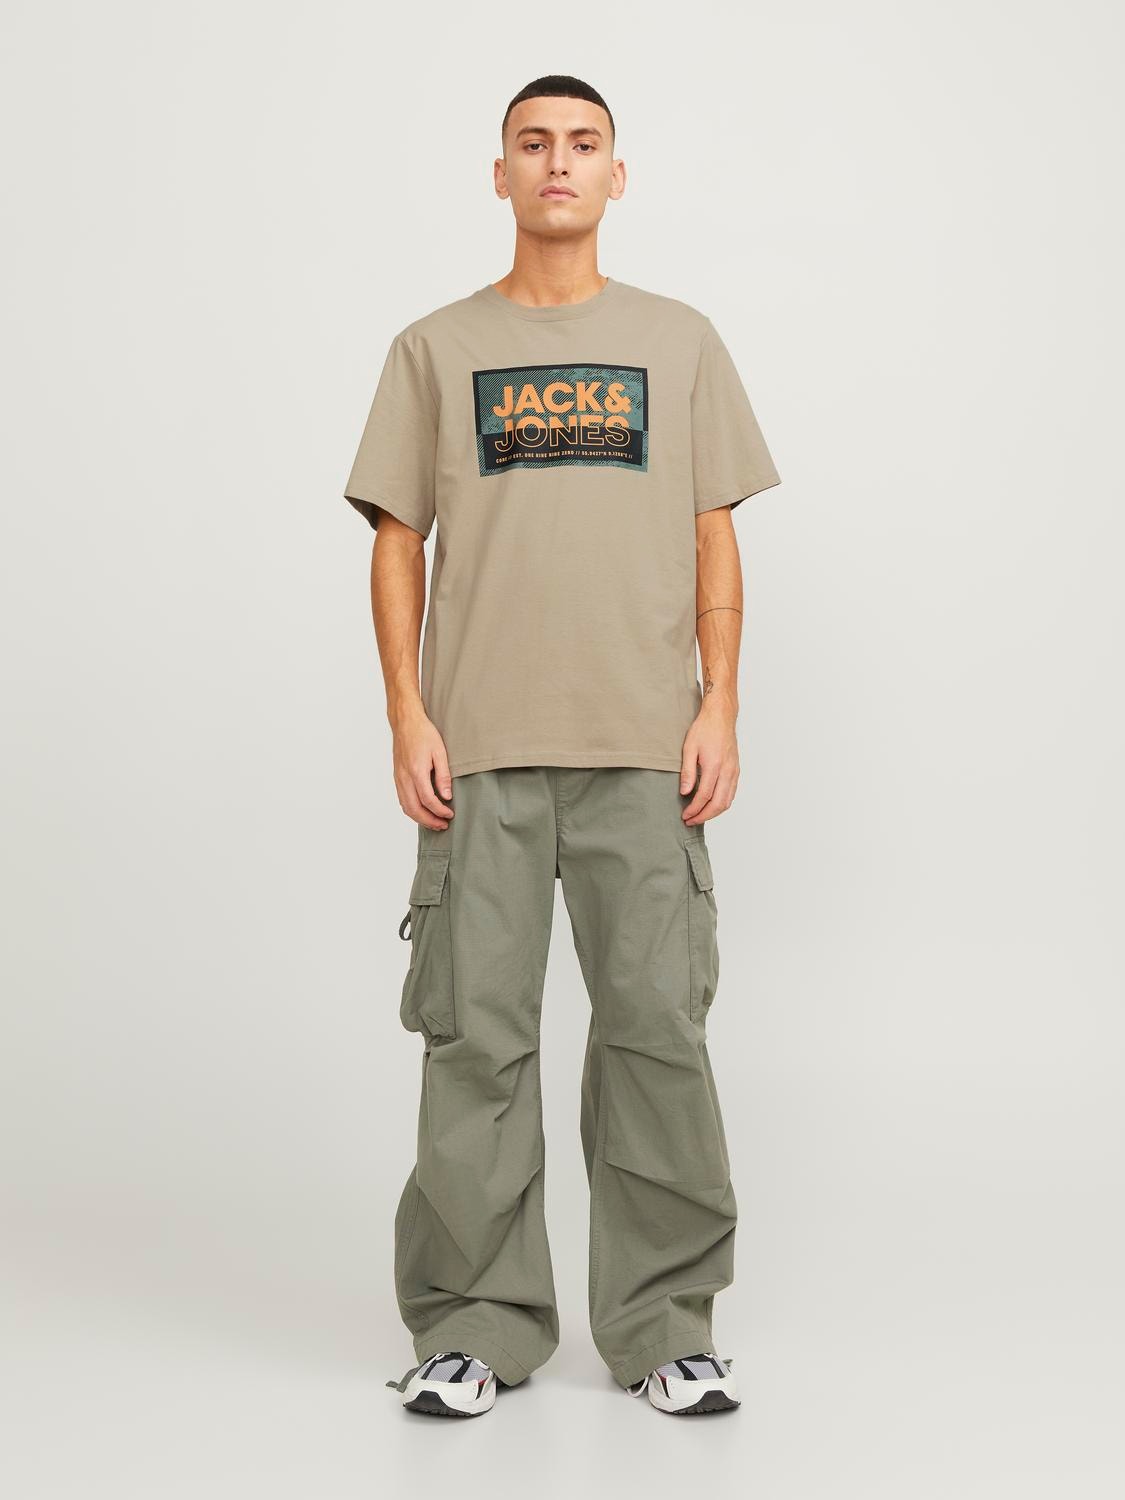 Jack & Jones 3er-pack Gedruckt Rundhals T-shirt -Navy Blazer - 12260780